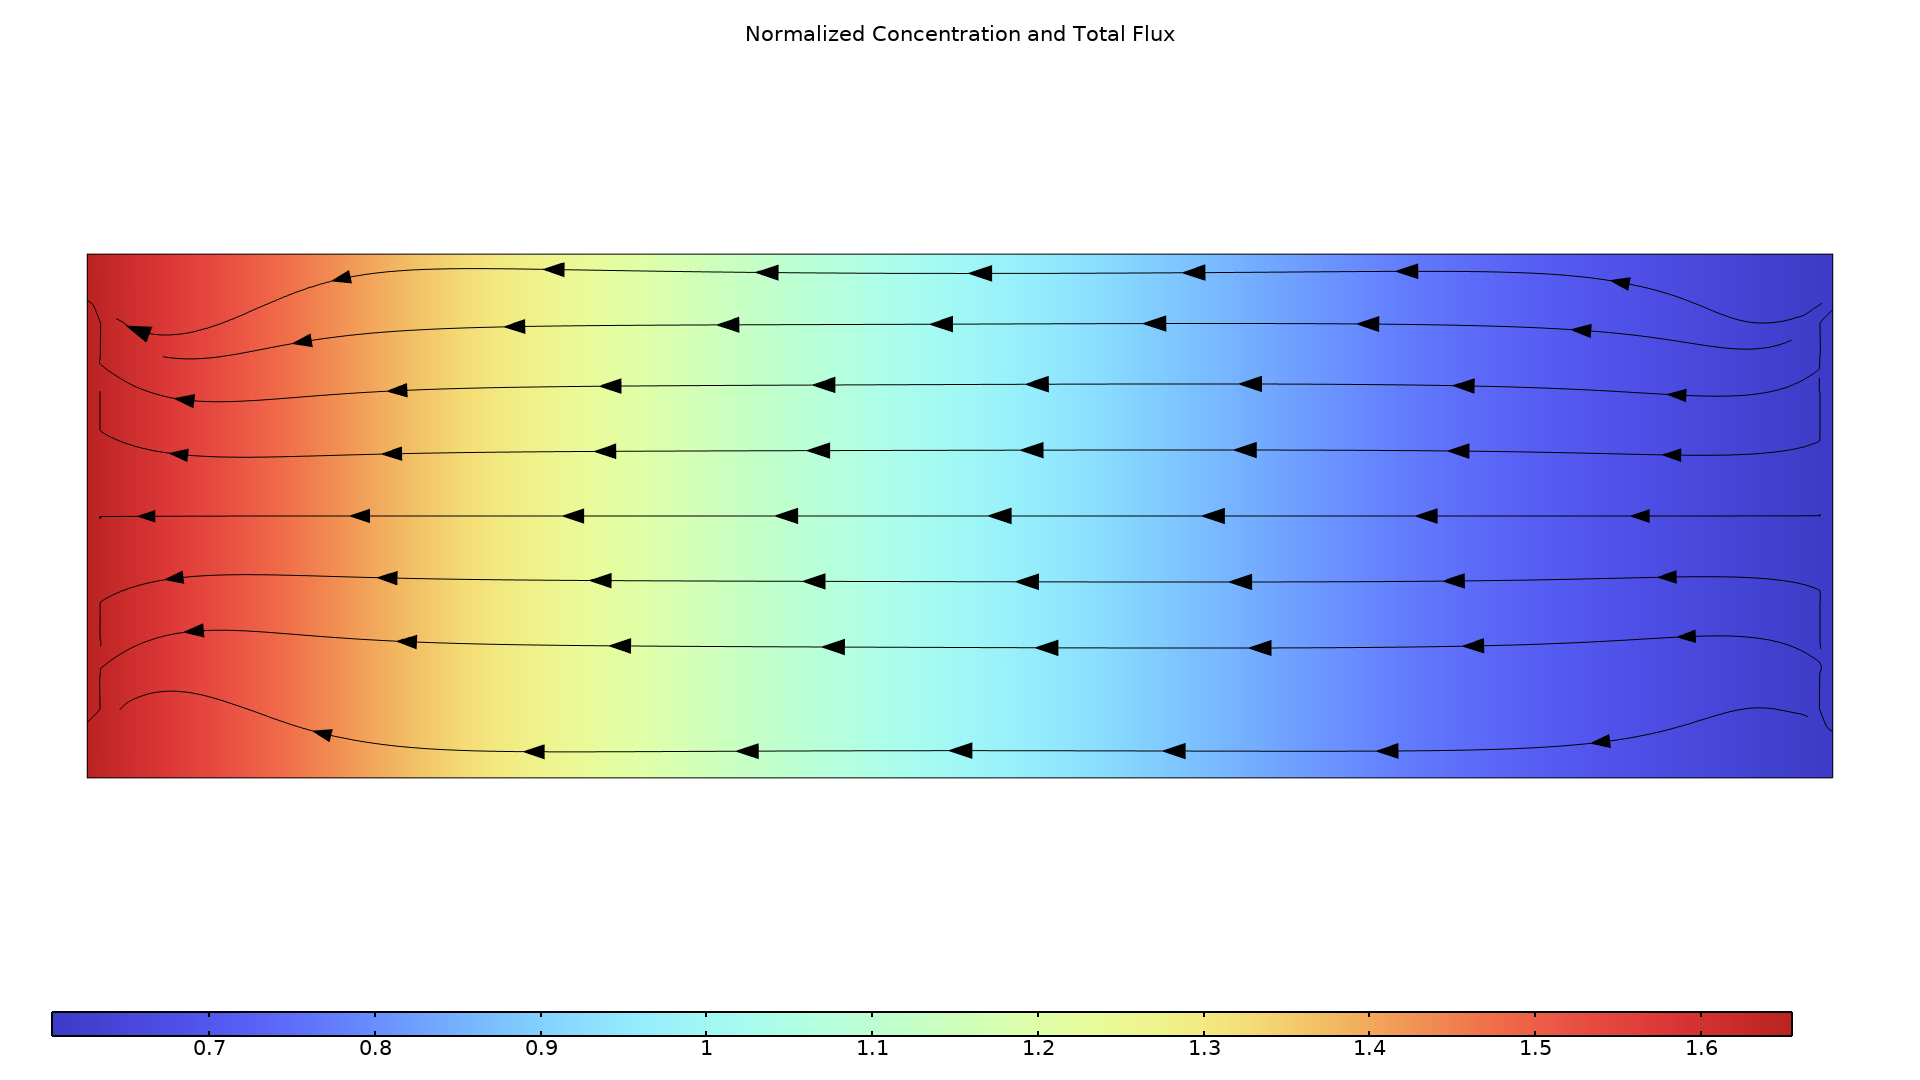 以 Rainbow Light 颜色表显示的金属内的浓度和总通量。